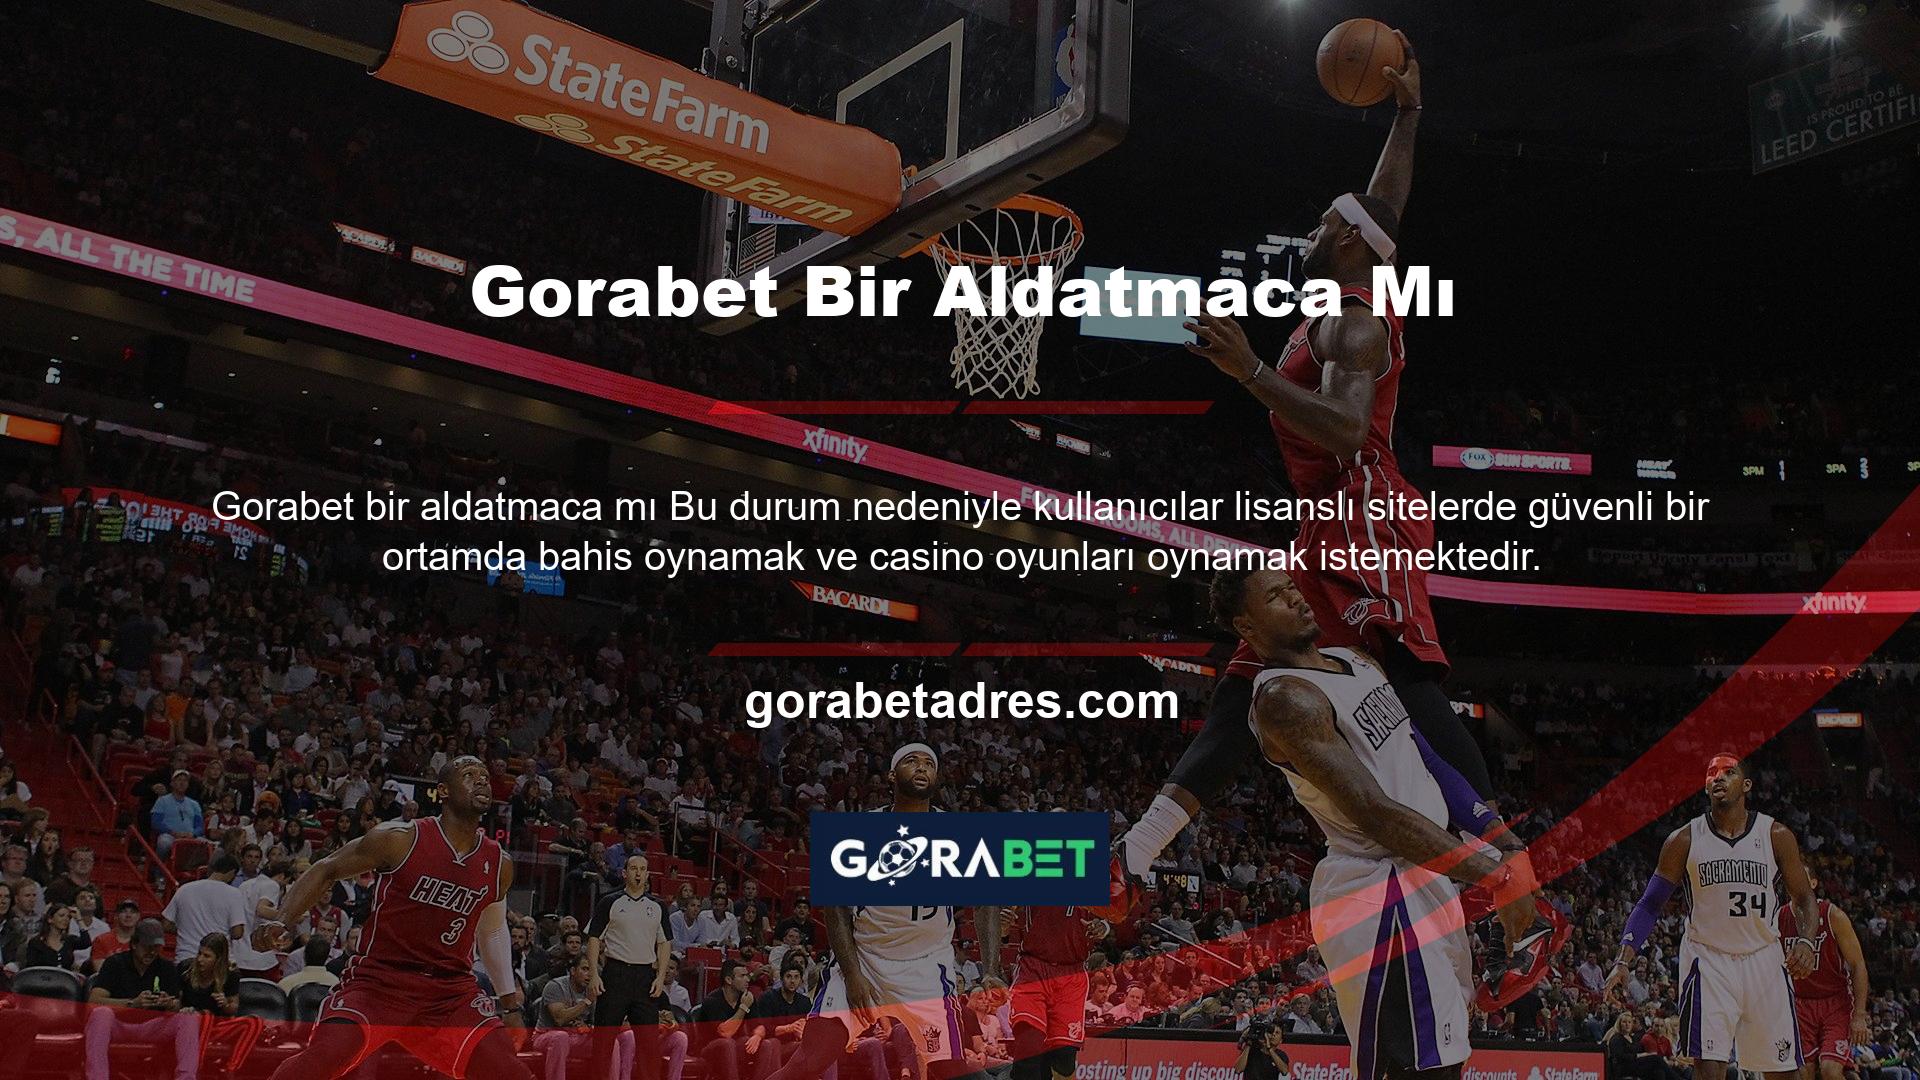 Gorabet web sitesi, güvenli bir web sitesi arayan kullanıcılar için de bir alternatif sunuyor